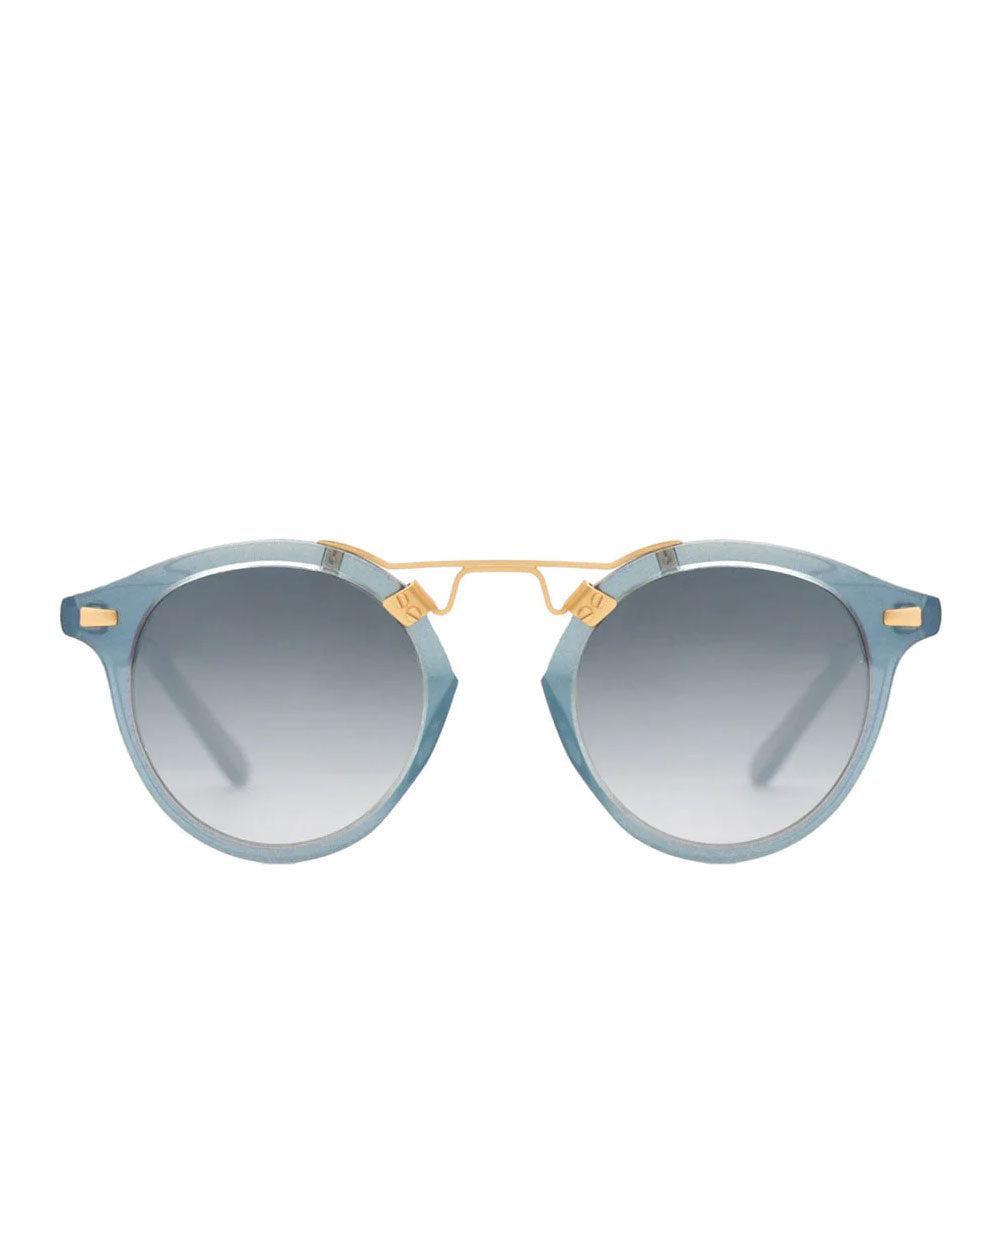 St. Louis Sunglasses in Opal